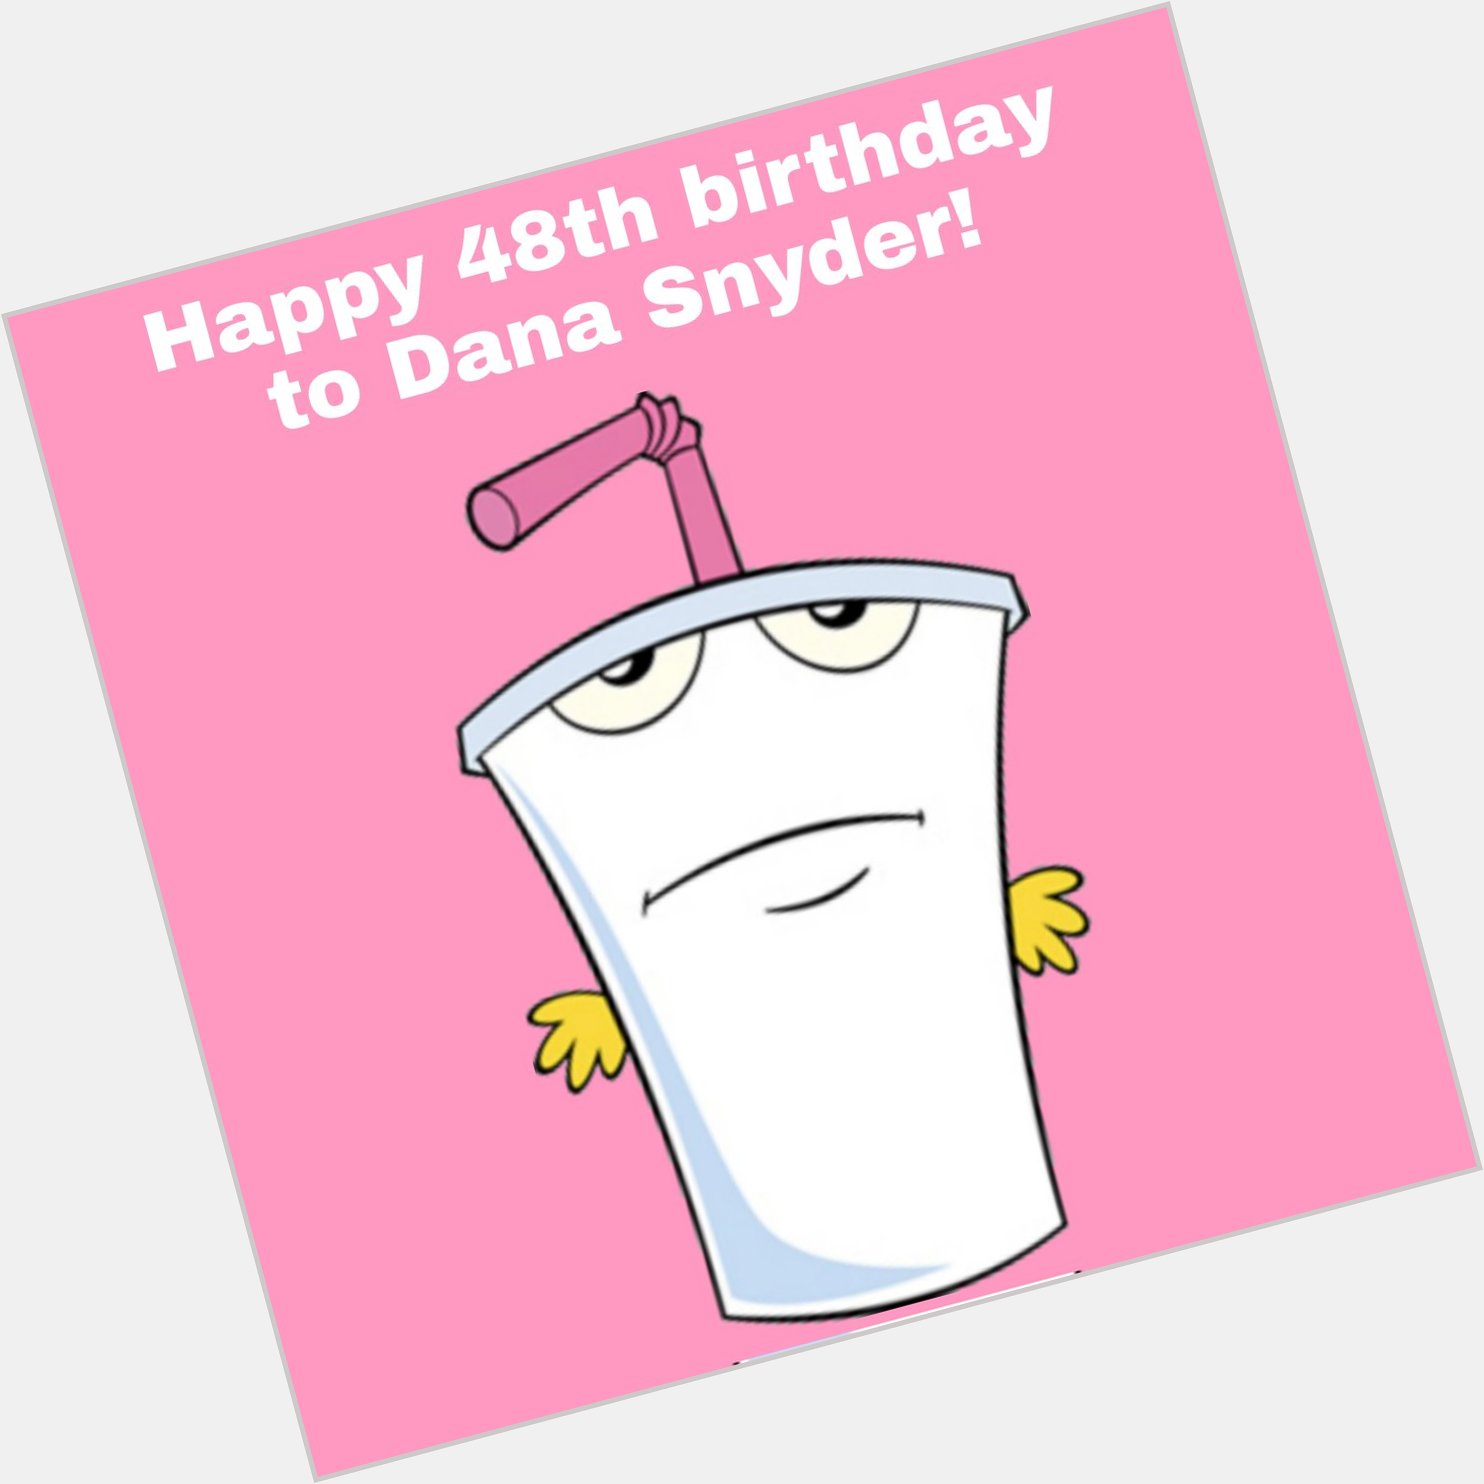 Happy 48th birthday to Dana Snyder! 